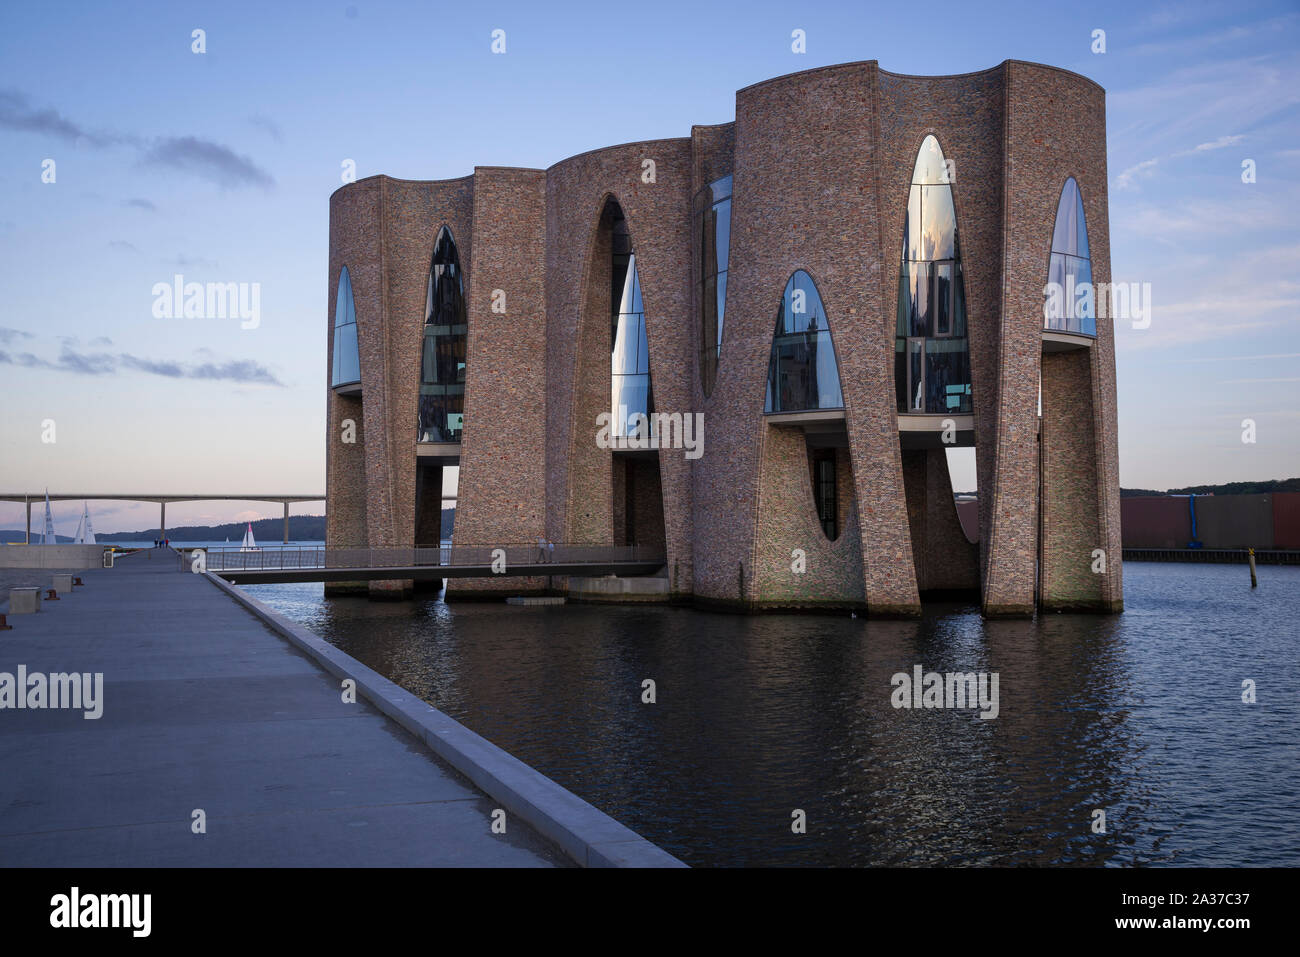 Fjordenhus, moderne Architektur an der Hafenfront  in Vejle, Dänemark, Europa Stock Photo